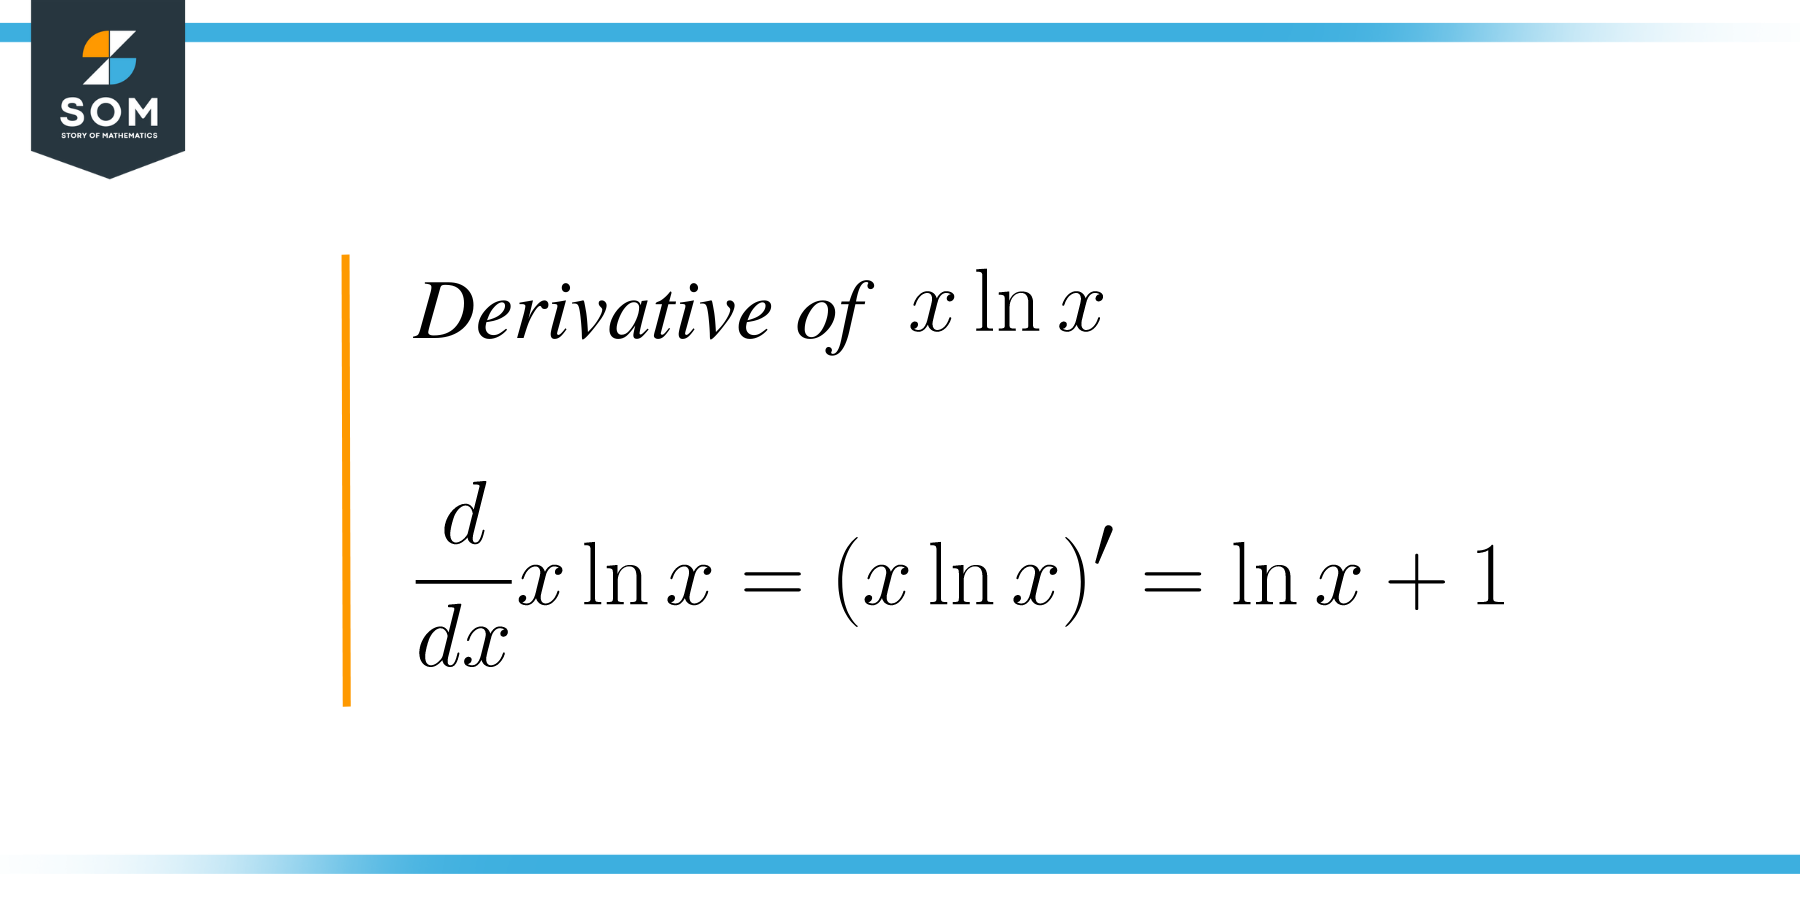 Derivative of xlnx result